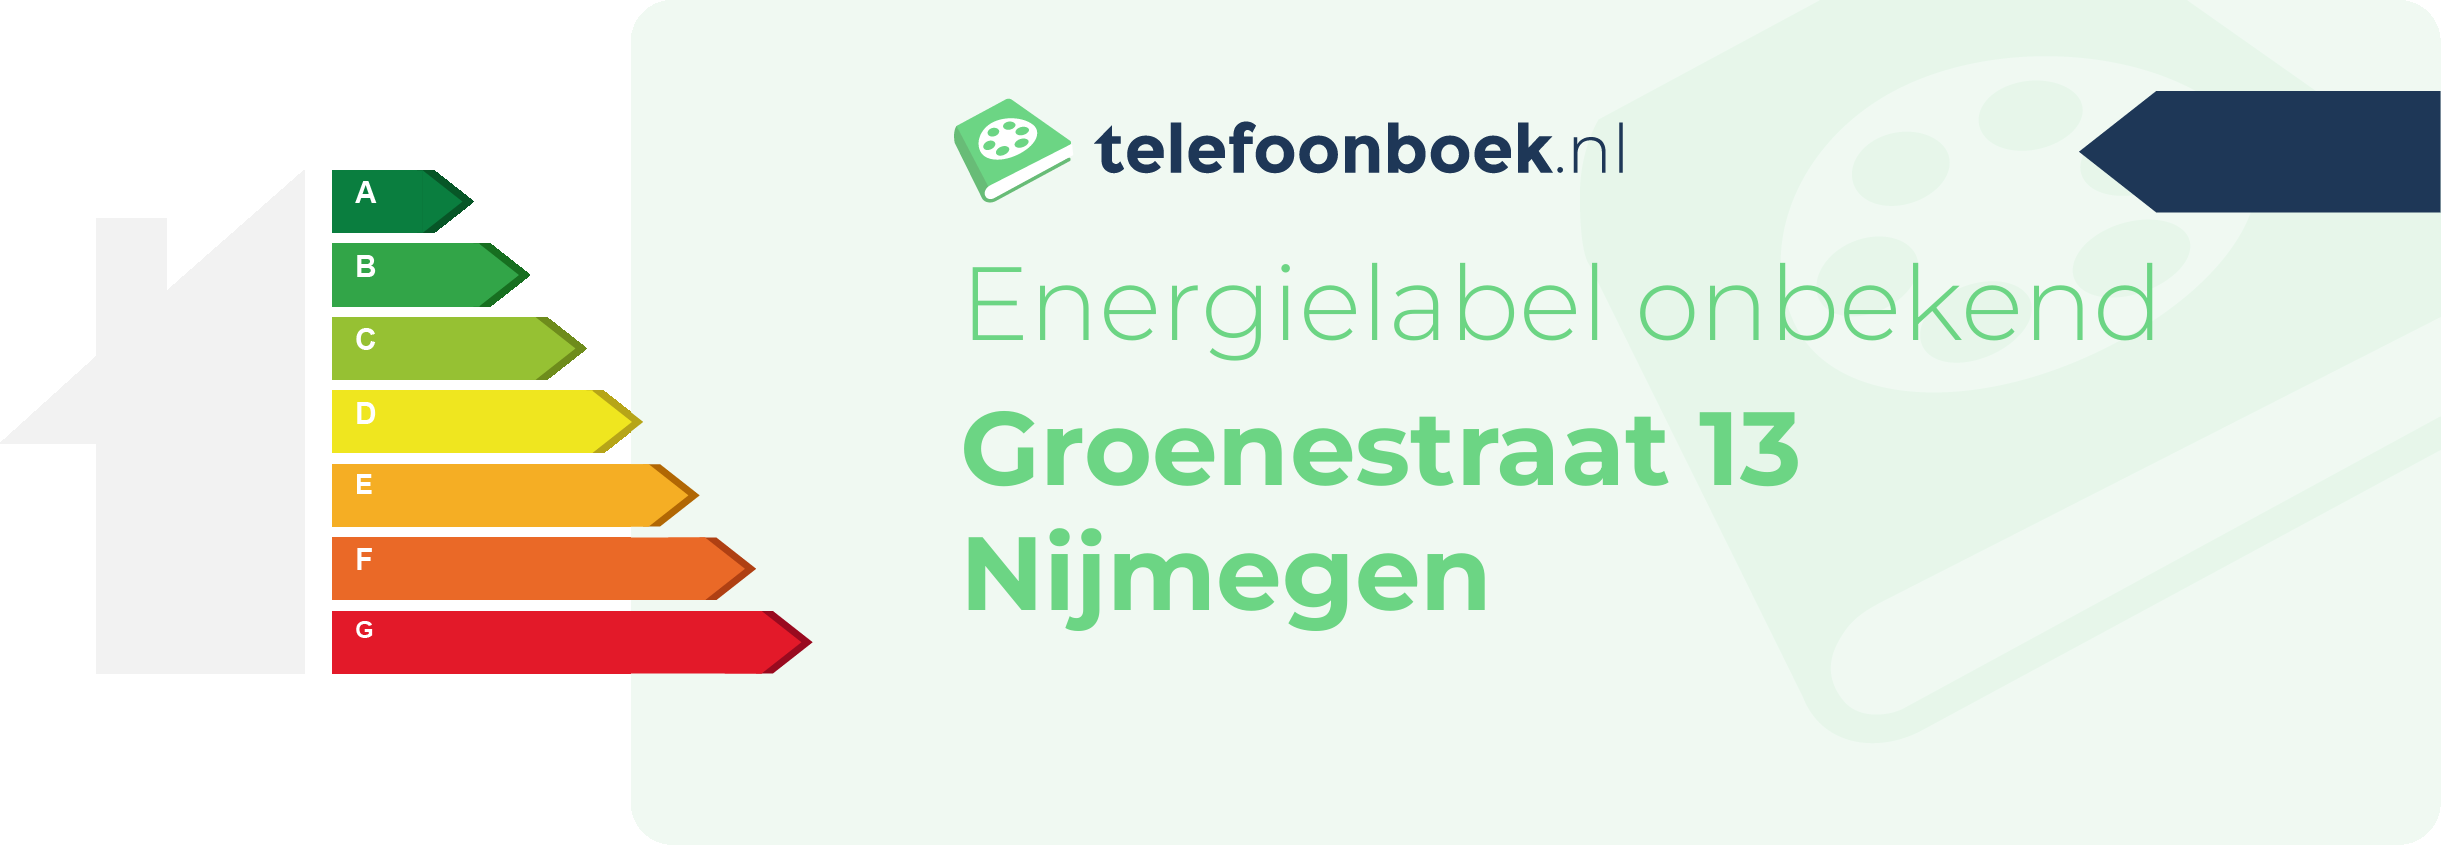 Energielabel Groenestraat 13 Nijmegen